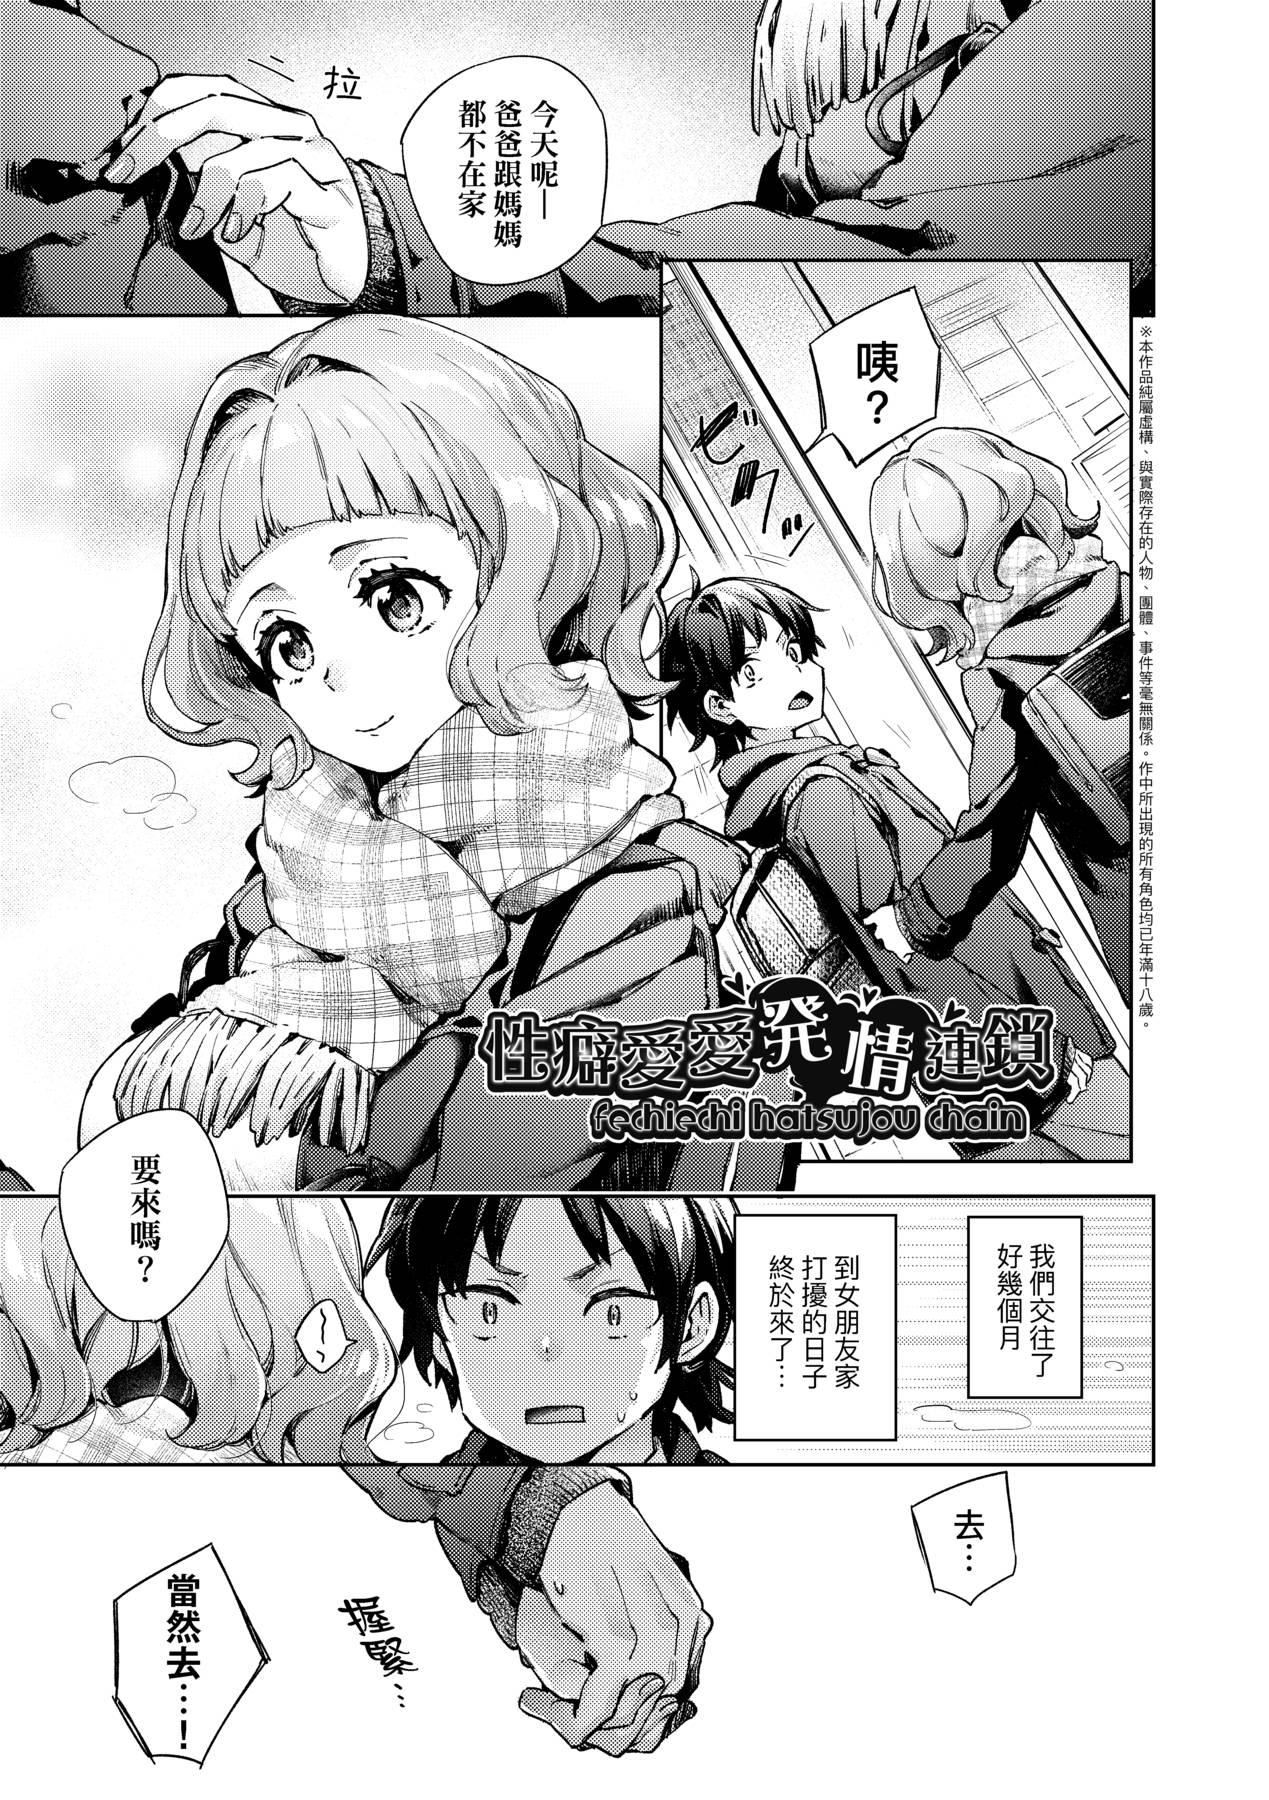 [未來數位中文版] [FDH-065] [冬みかん] 女子校生が制服姿でえっちなことをしているようです!8.jpg